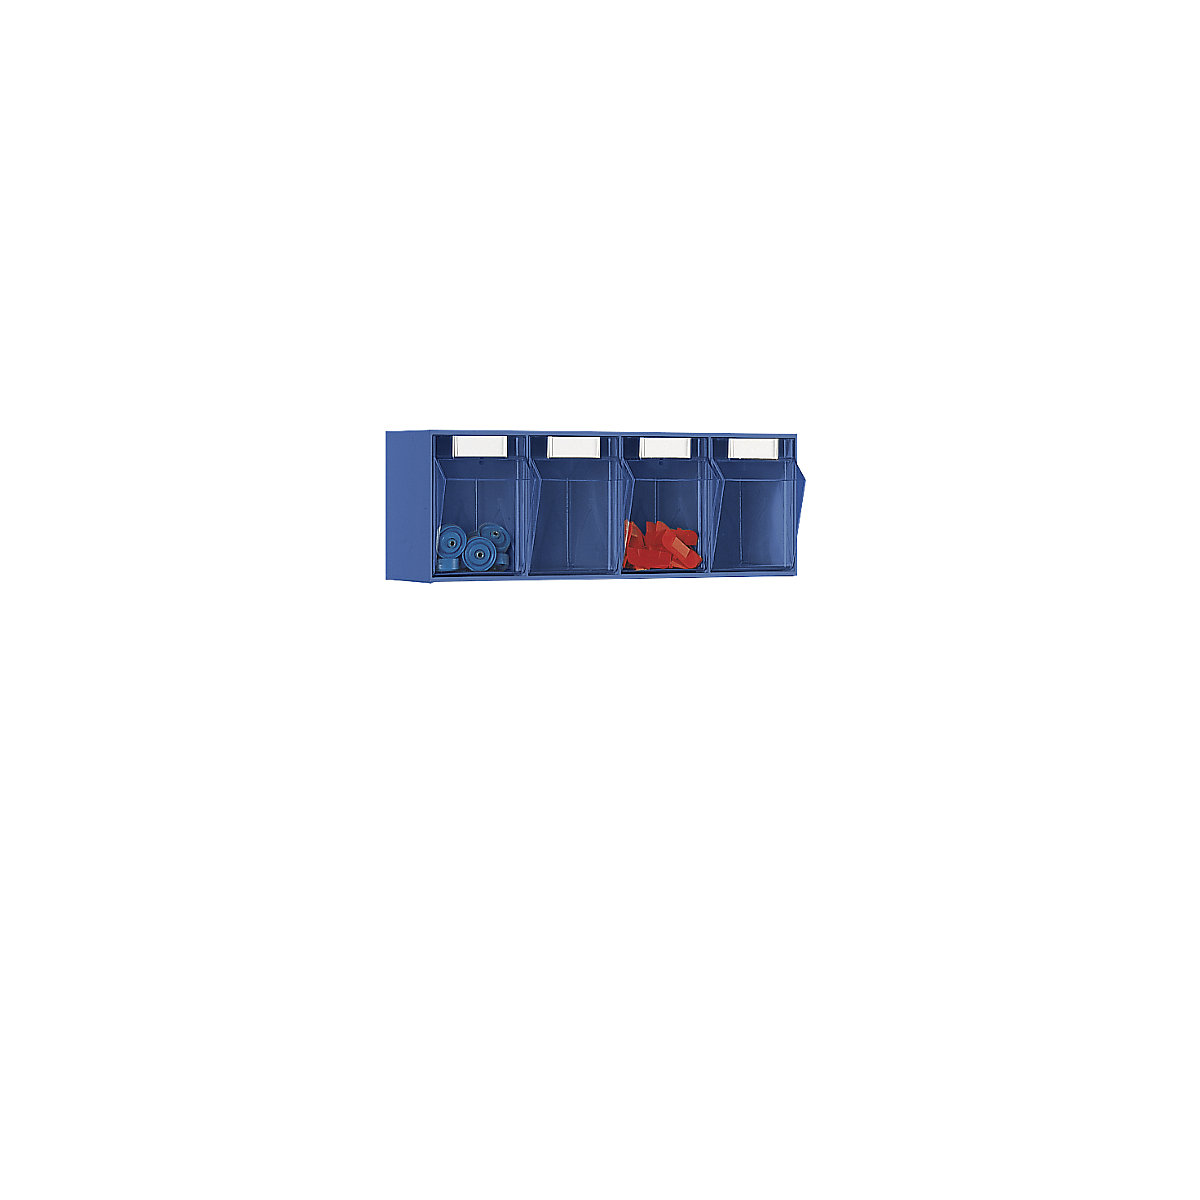 Sustav složivih kutija, VxŠxD kućišta 207 x 600 x 168 mm, 4 kutije, u plavoj boji-7